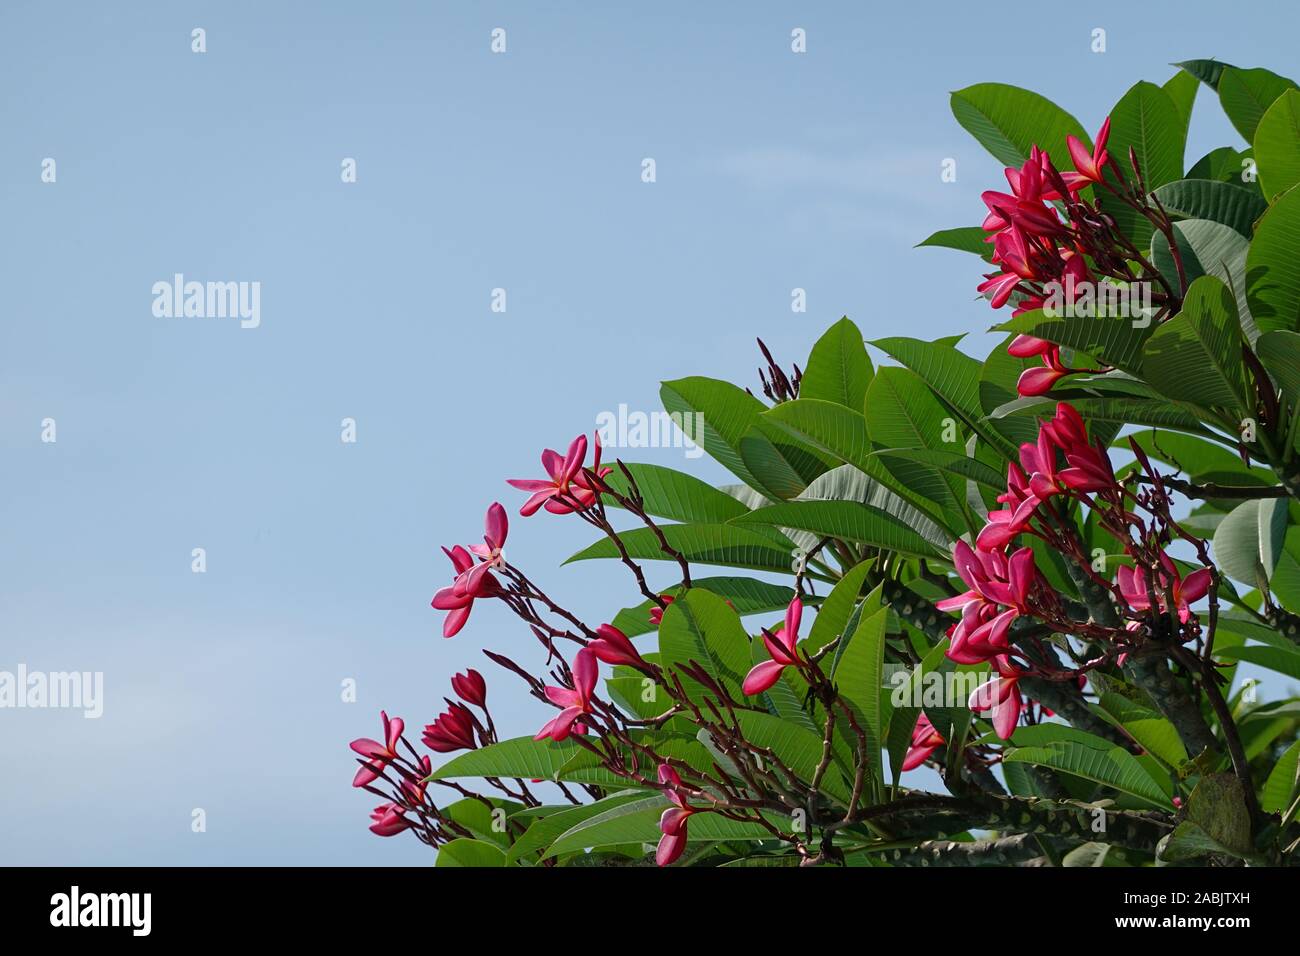 Rosa Frangipani close-up, fiori di Plumeria rubra, ramo con fiori di colore rosa con la luce del sole e cielo blu, westindian Jasmin, spa consept Foto Stock